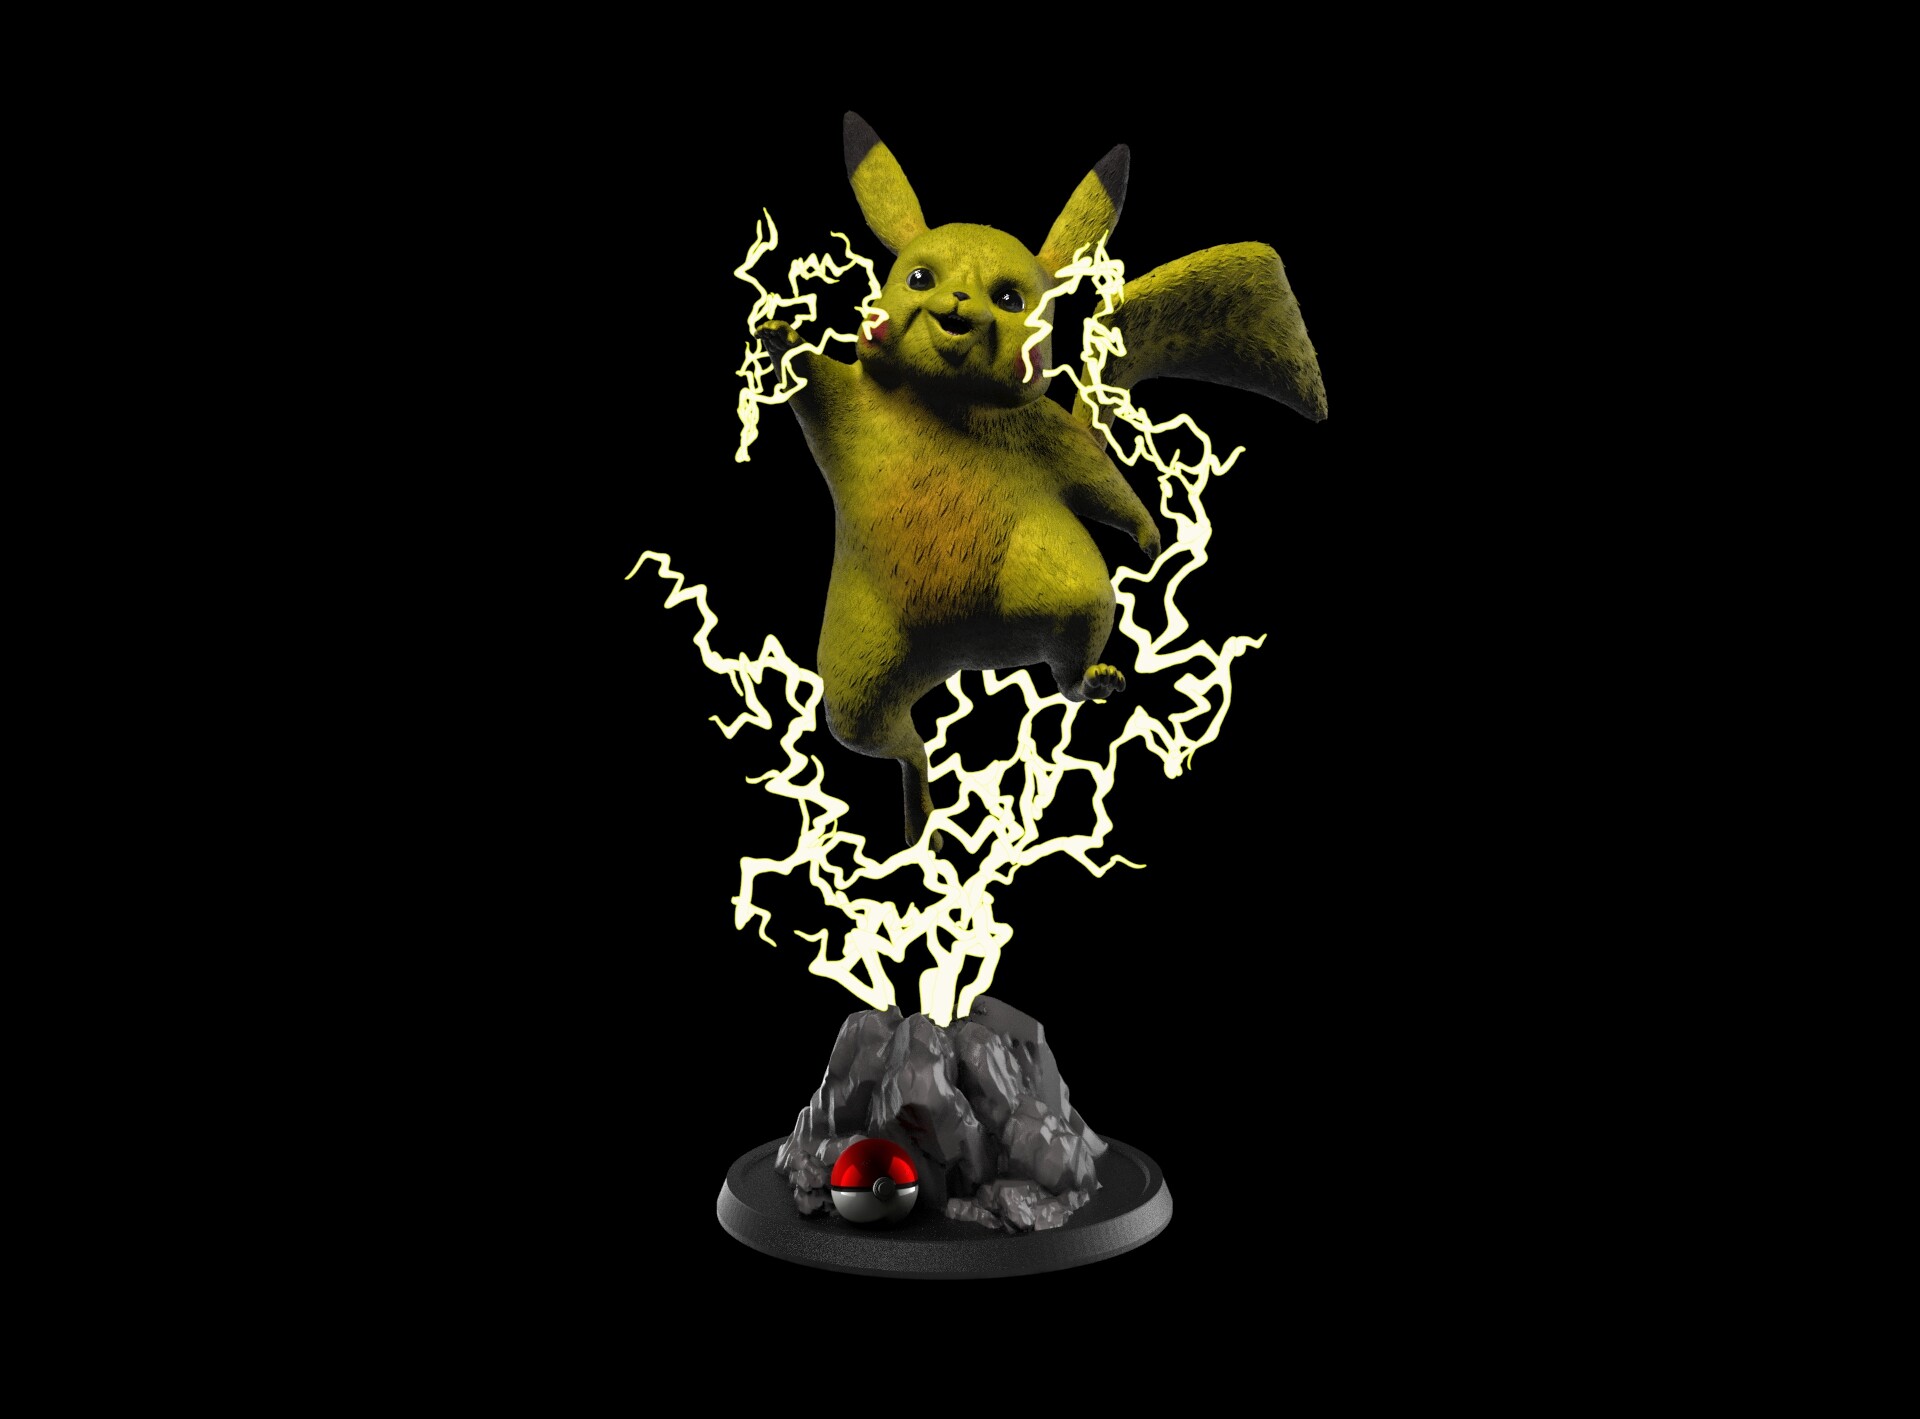 ArtStation - Shiny Pikachu